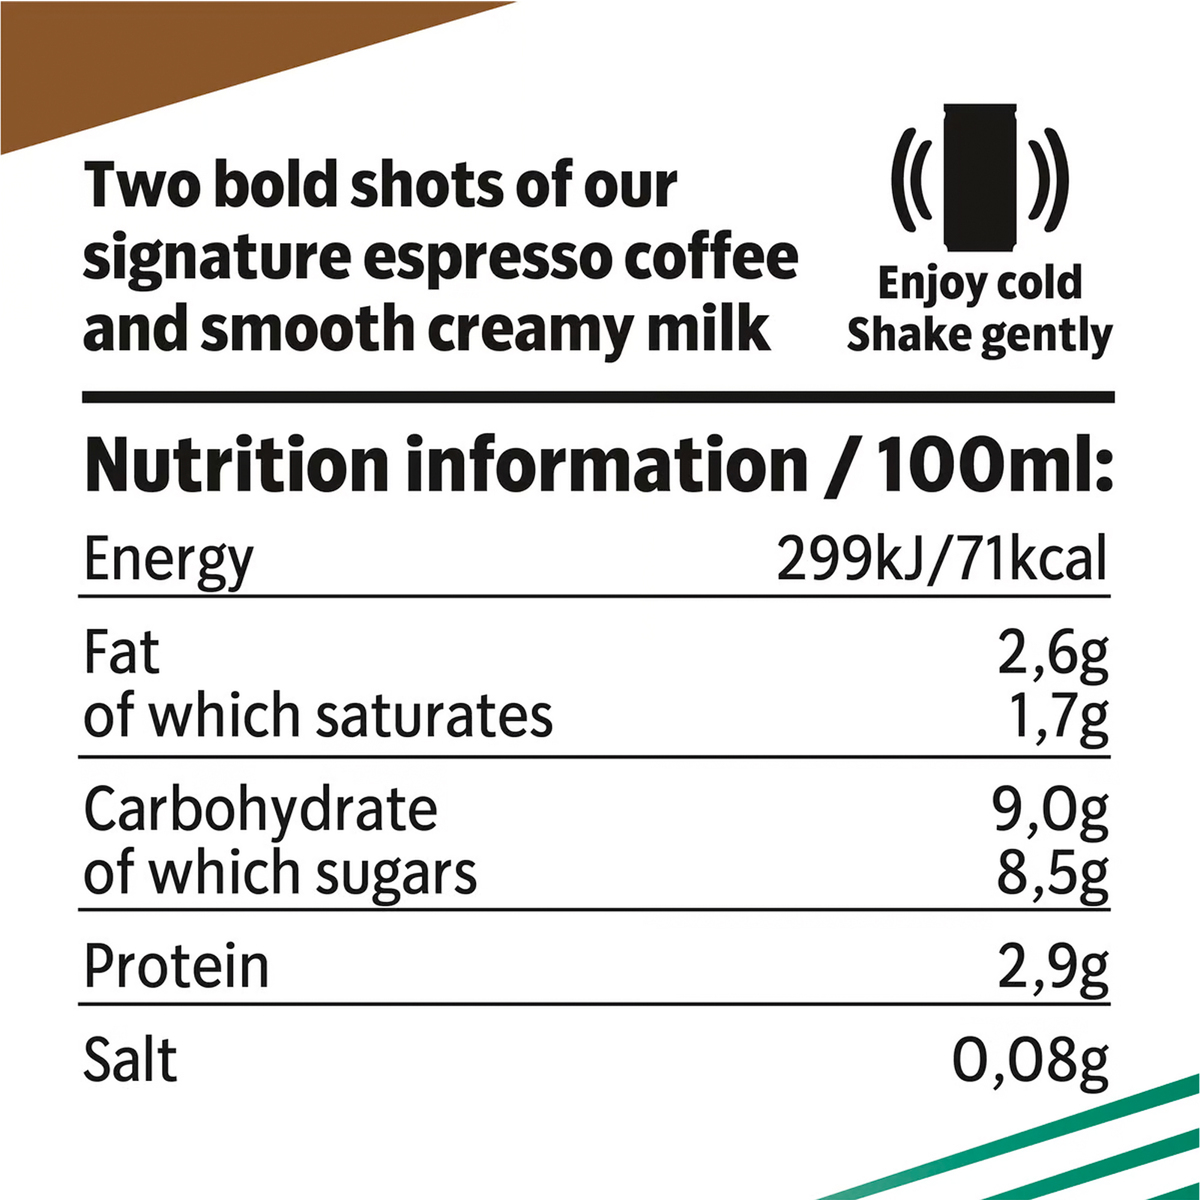 Starbucks Doubleshot Espresso Value Pack 2 x 200 ml